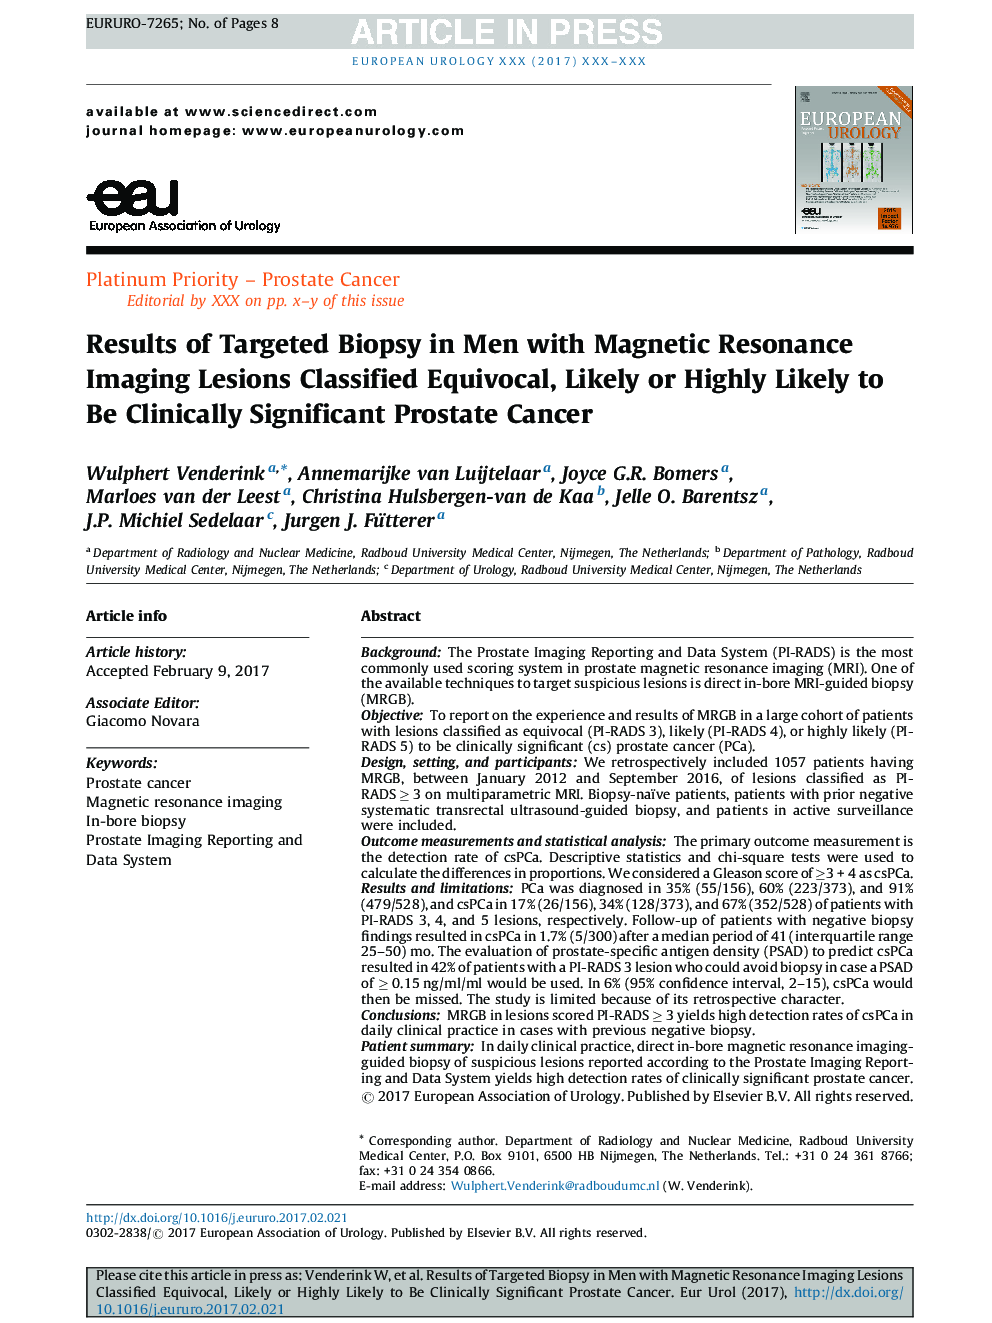 نتایج بیوپسی هدفمند در مردان مبتلا به ضایعات تصویربرداری رزونانس مغناطیسی طبقه بندی شده عجیب و غریب، احتمالا و یا احتمالا به نظر می رسد سرطان پروستات قابل توجه بالینی 